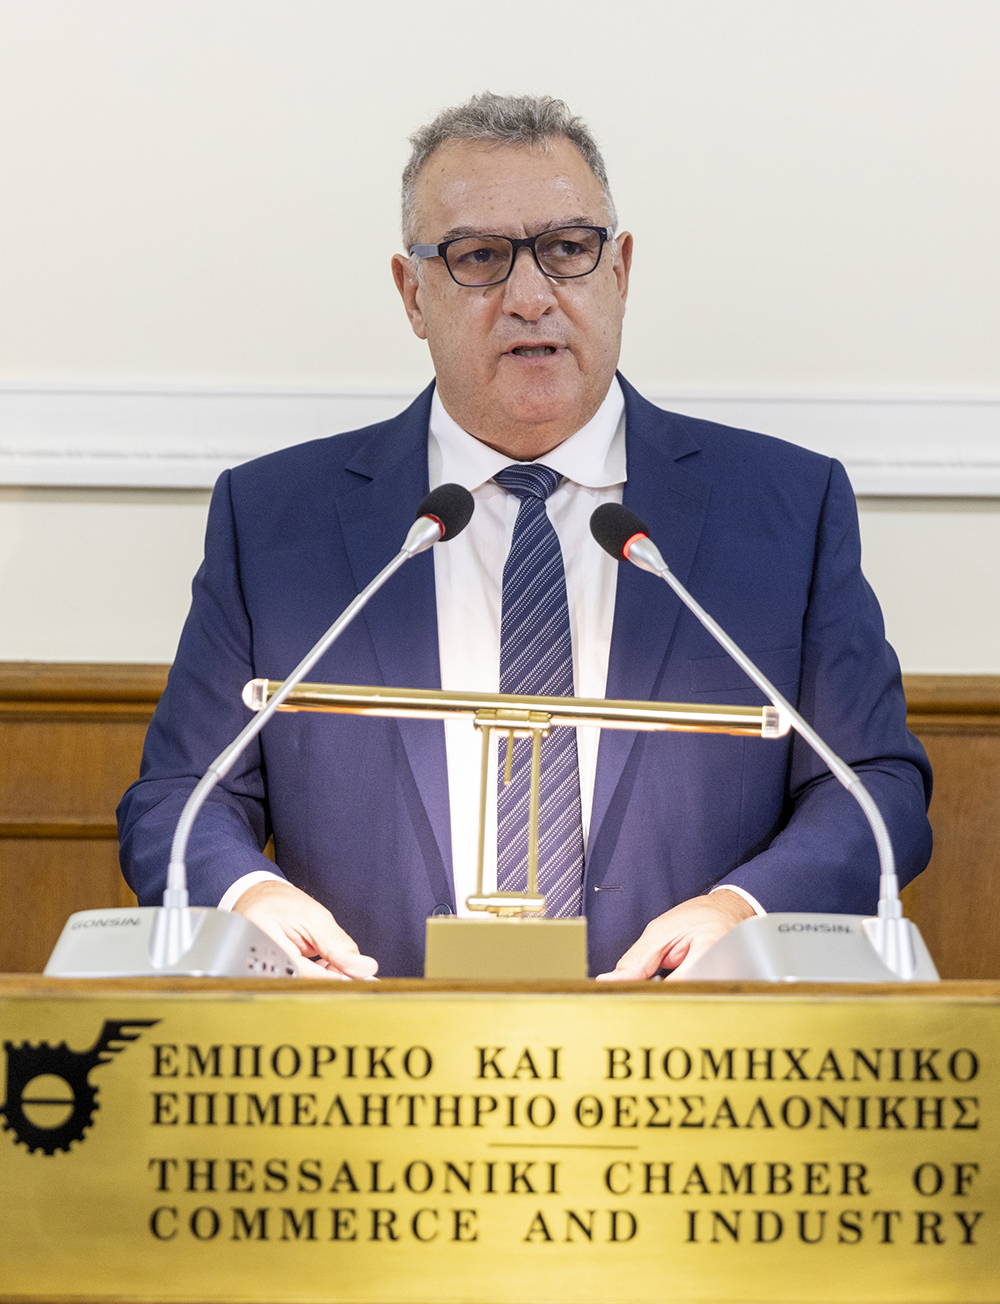  Ο κ. Σ. Διαμαντίδης, Πρόεδρος του ΣΕΒΕ